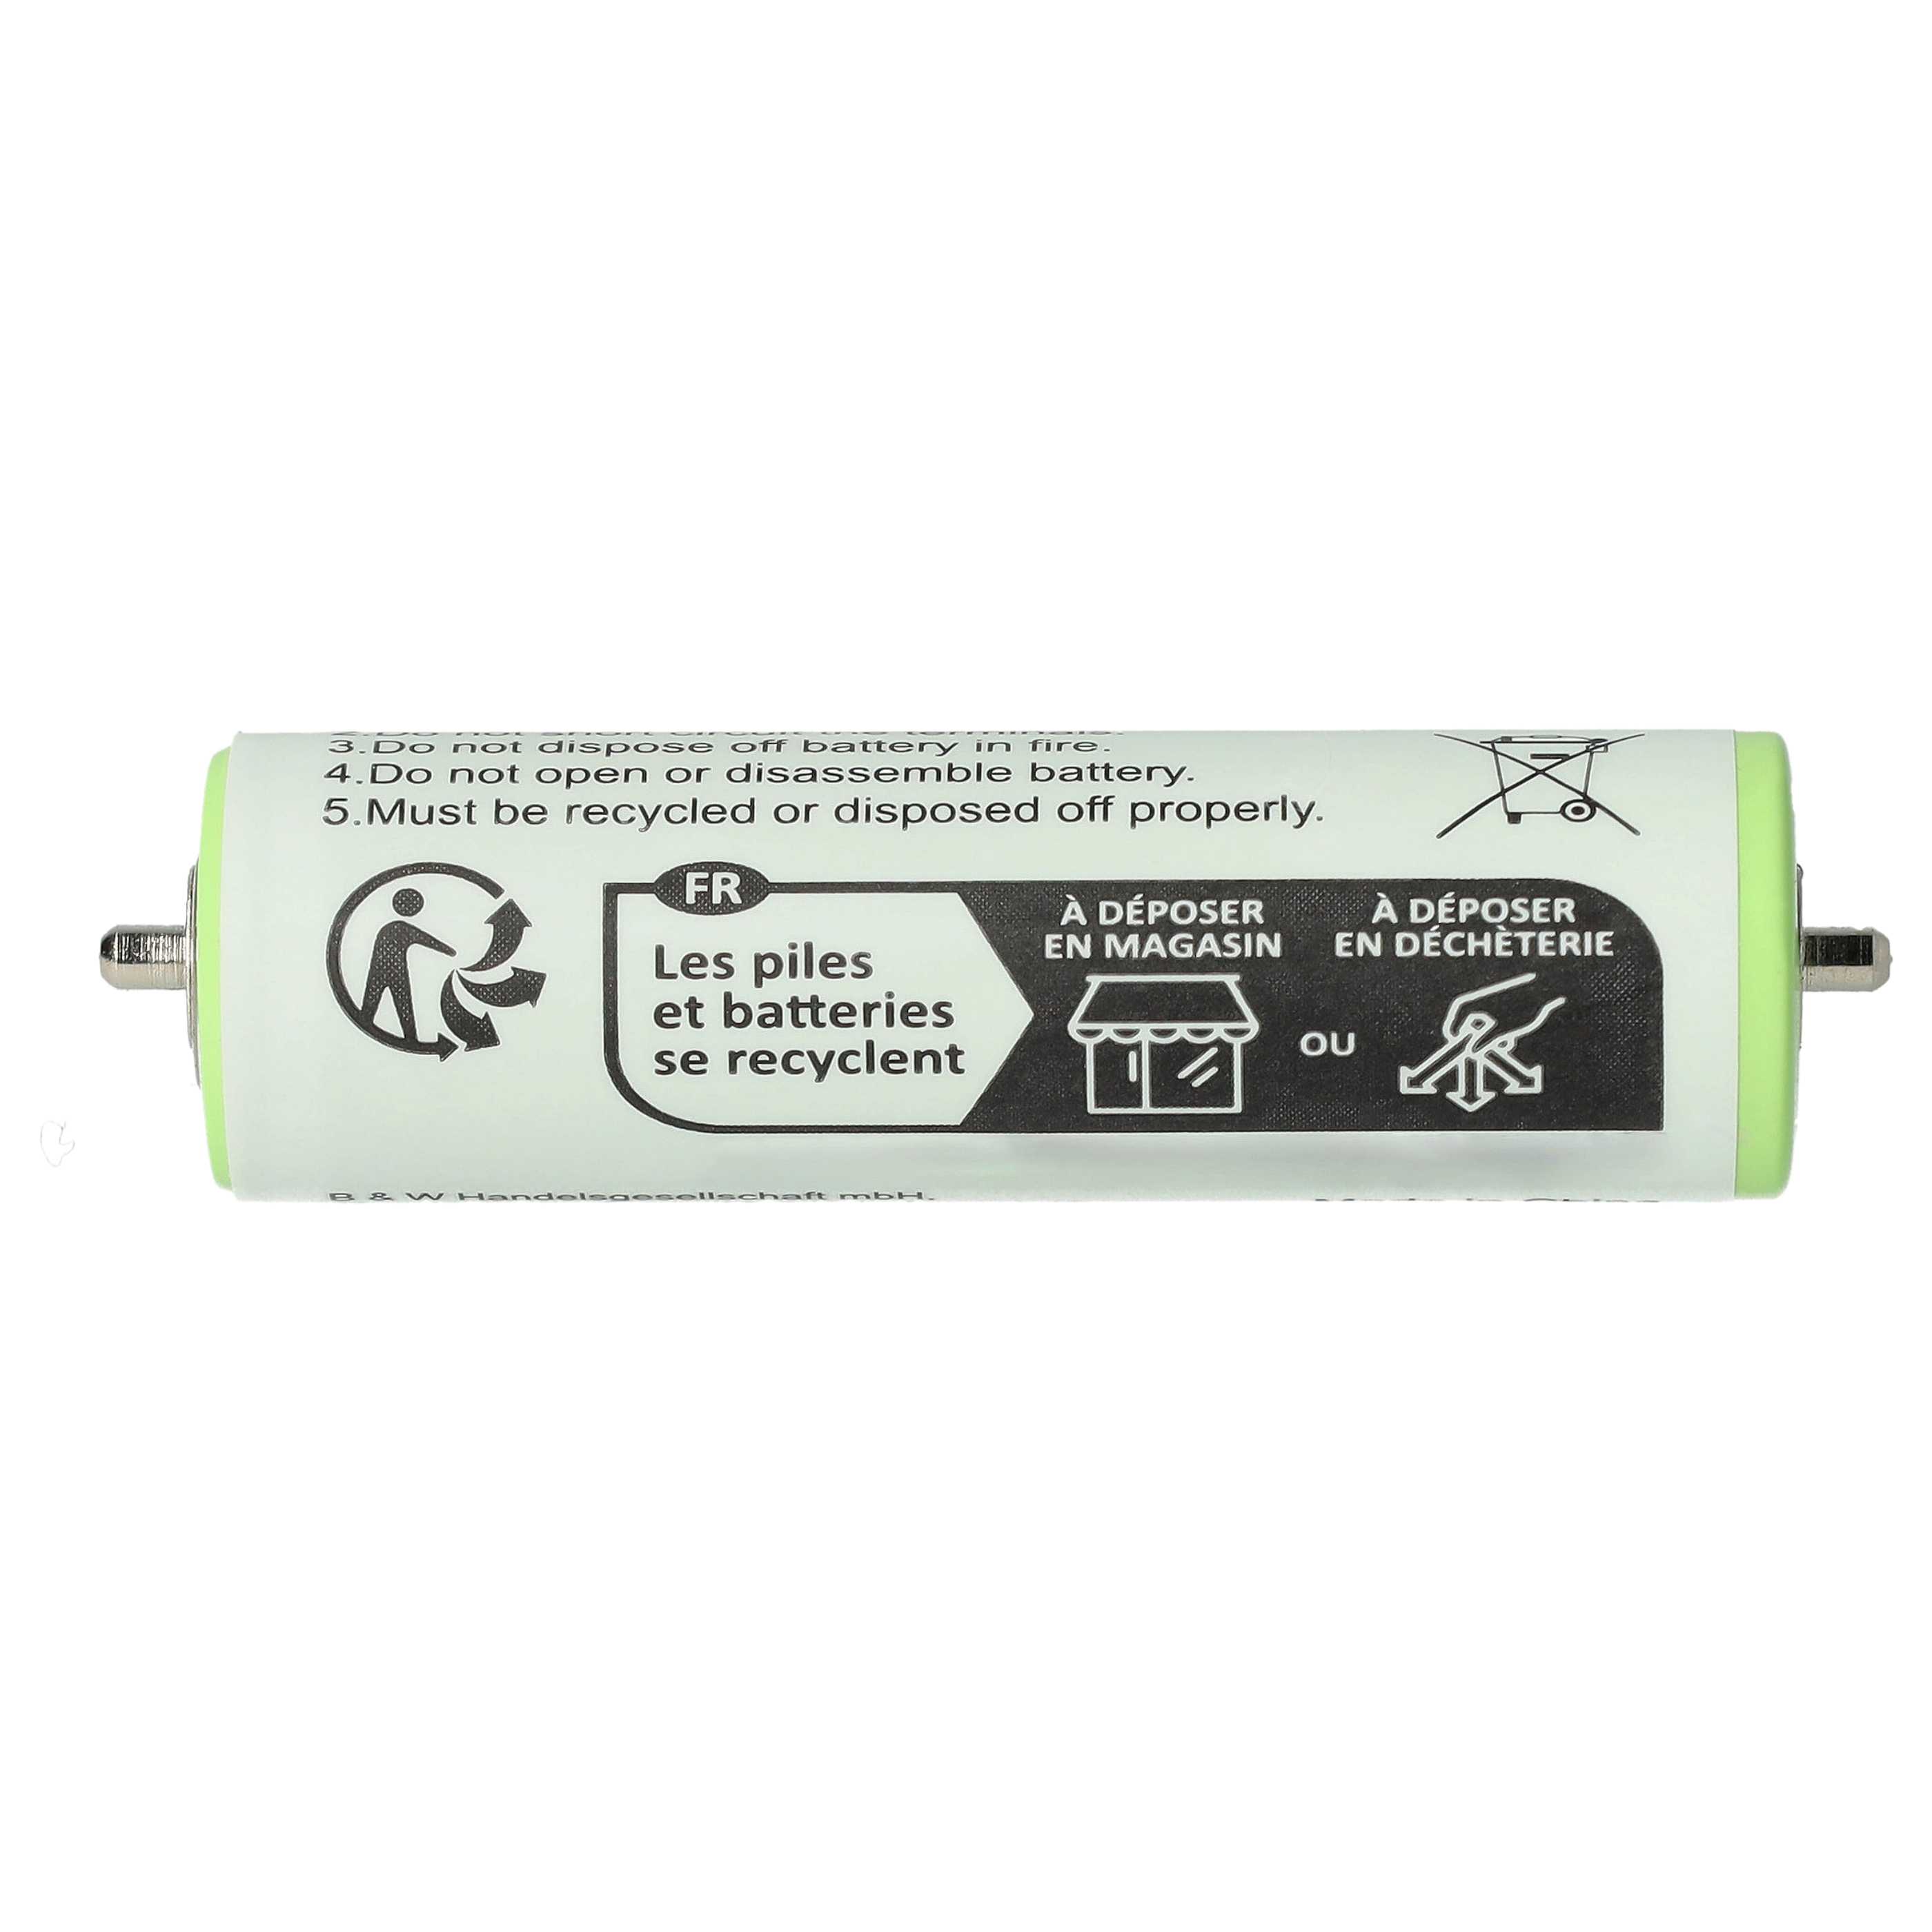 Batterie remplace Braun 67030923, 1HR-AAAUV, 67030834, 67030165 pour rasoir électrique - 1800mAh 1,2V NiMH